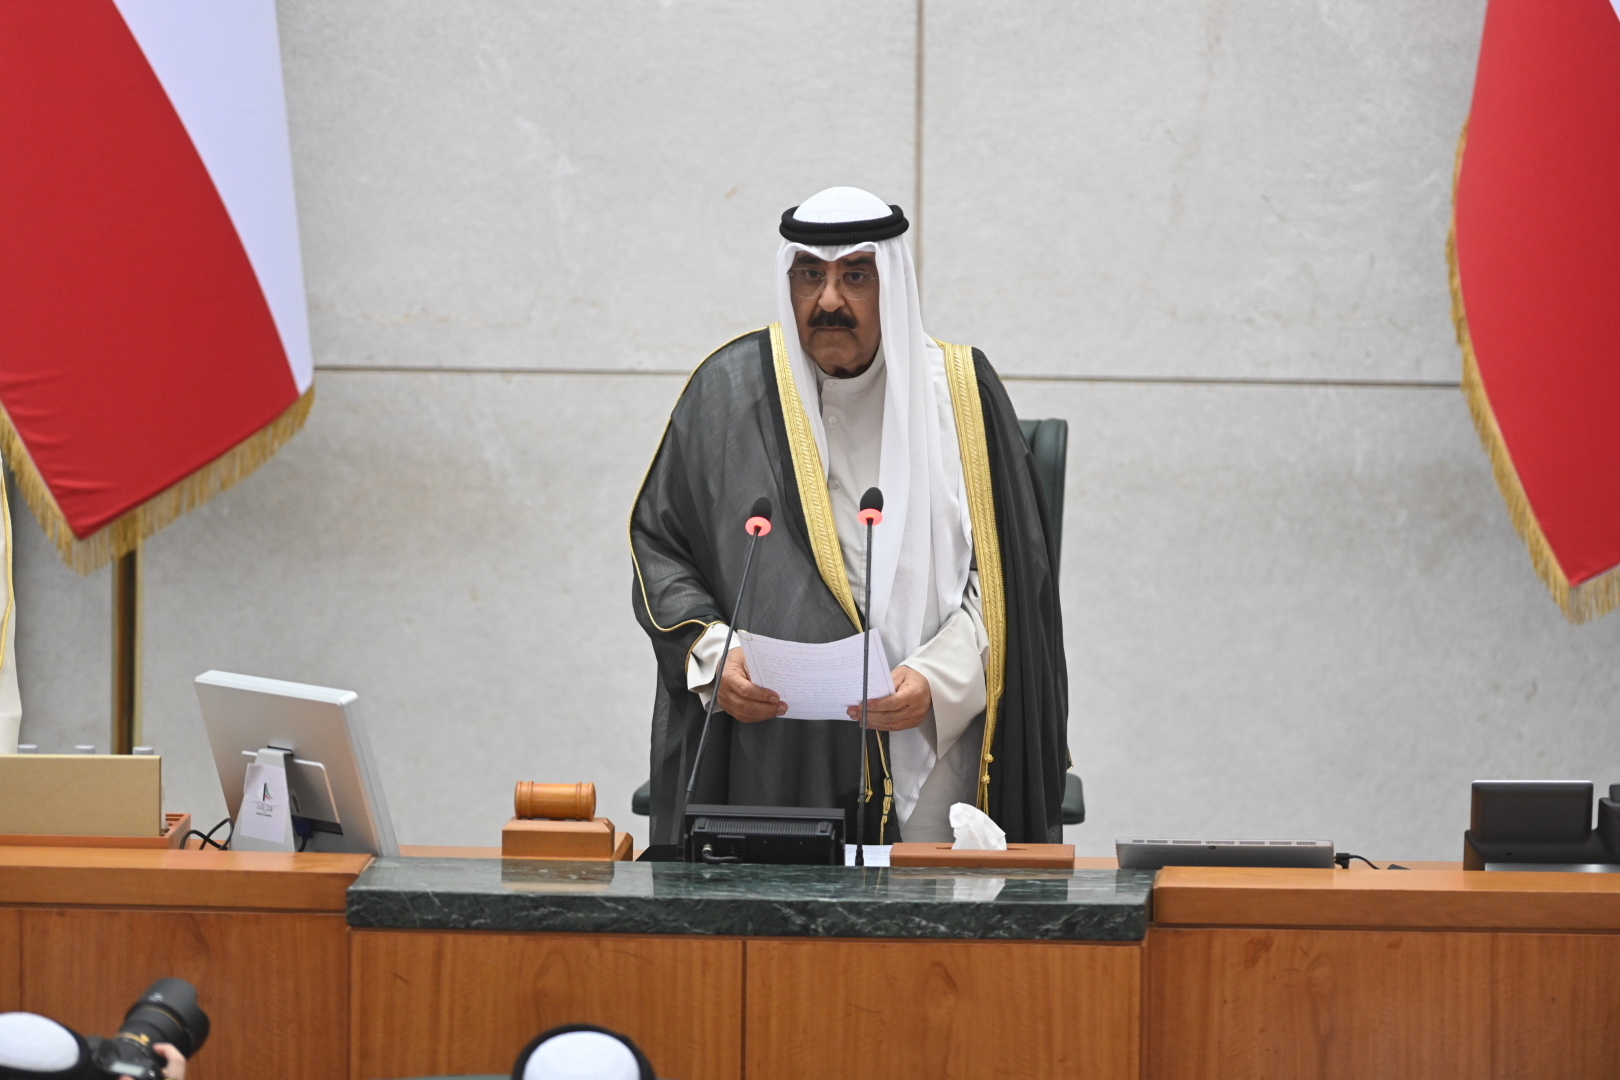 ولي عهد الكويت يدعو المجتمع الدولي لإنجاح مسيرة السلام بالشرق الأوسط